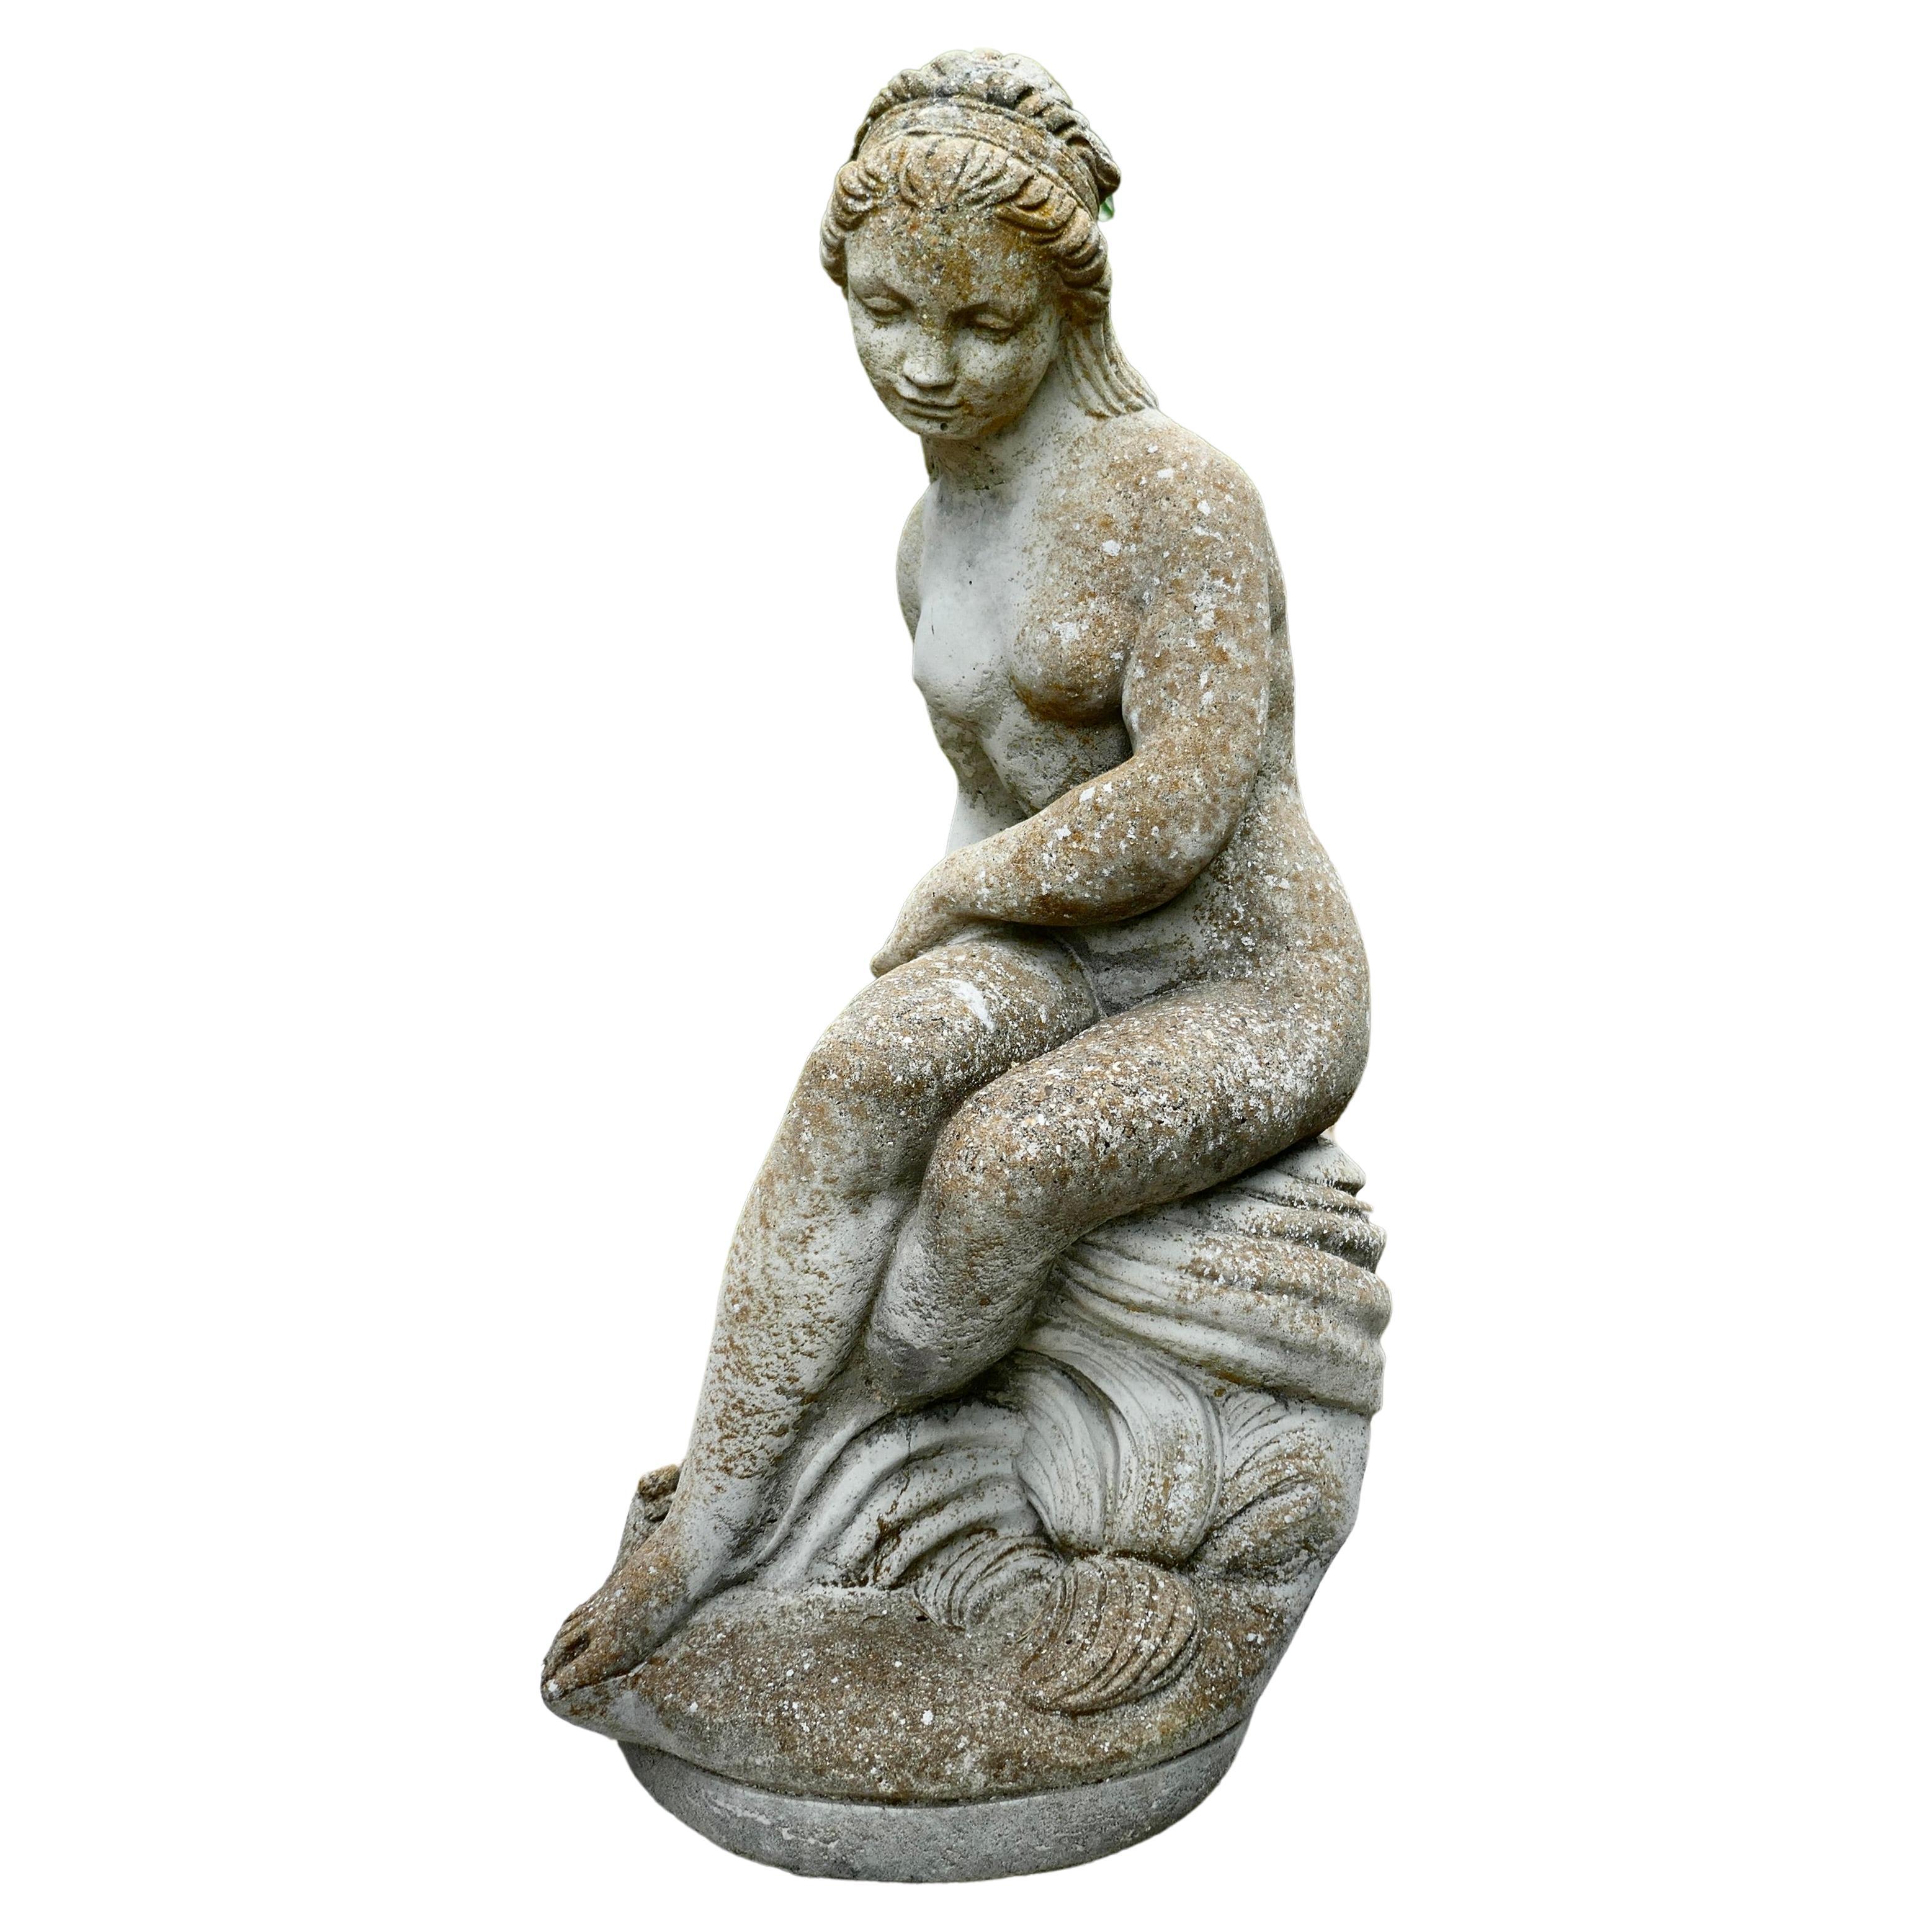 Verwitterte Statue der verwitterten Göttin Tyche, die eine Schlange hält